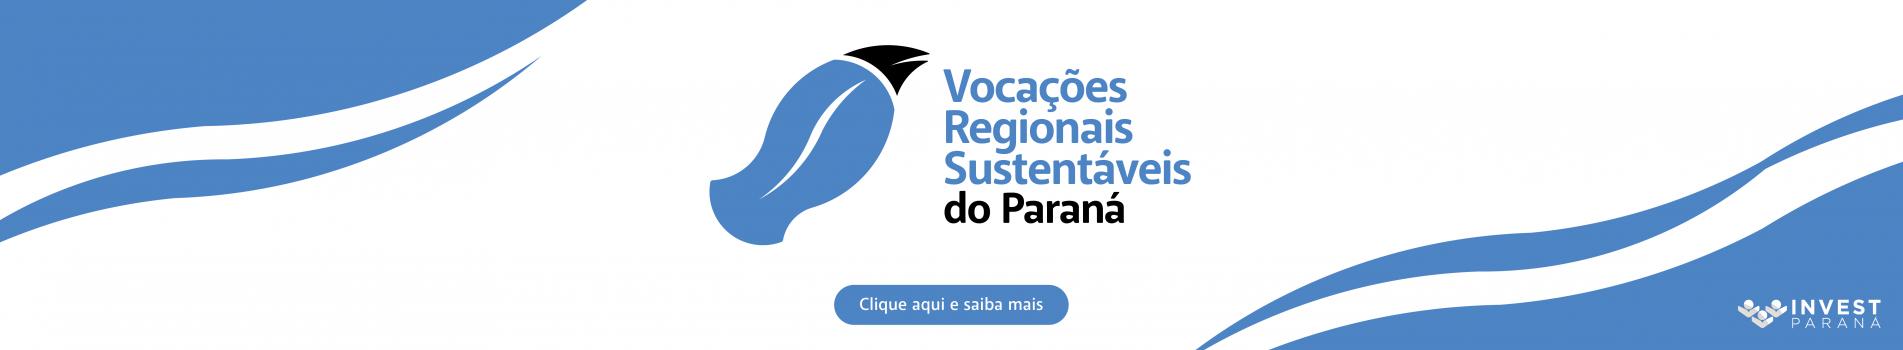 Programa Vocações Regionais Sustentáveis do Paraná